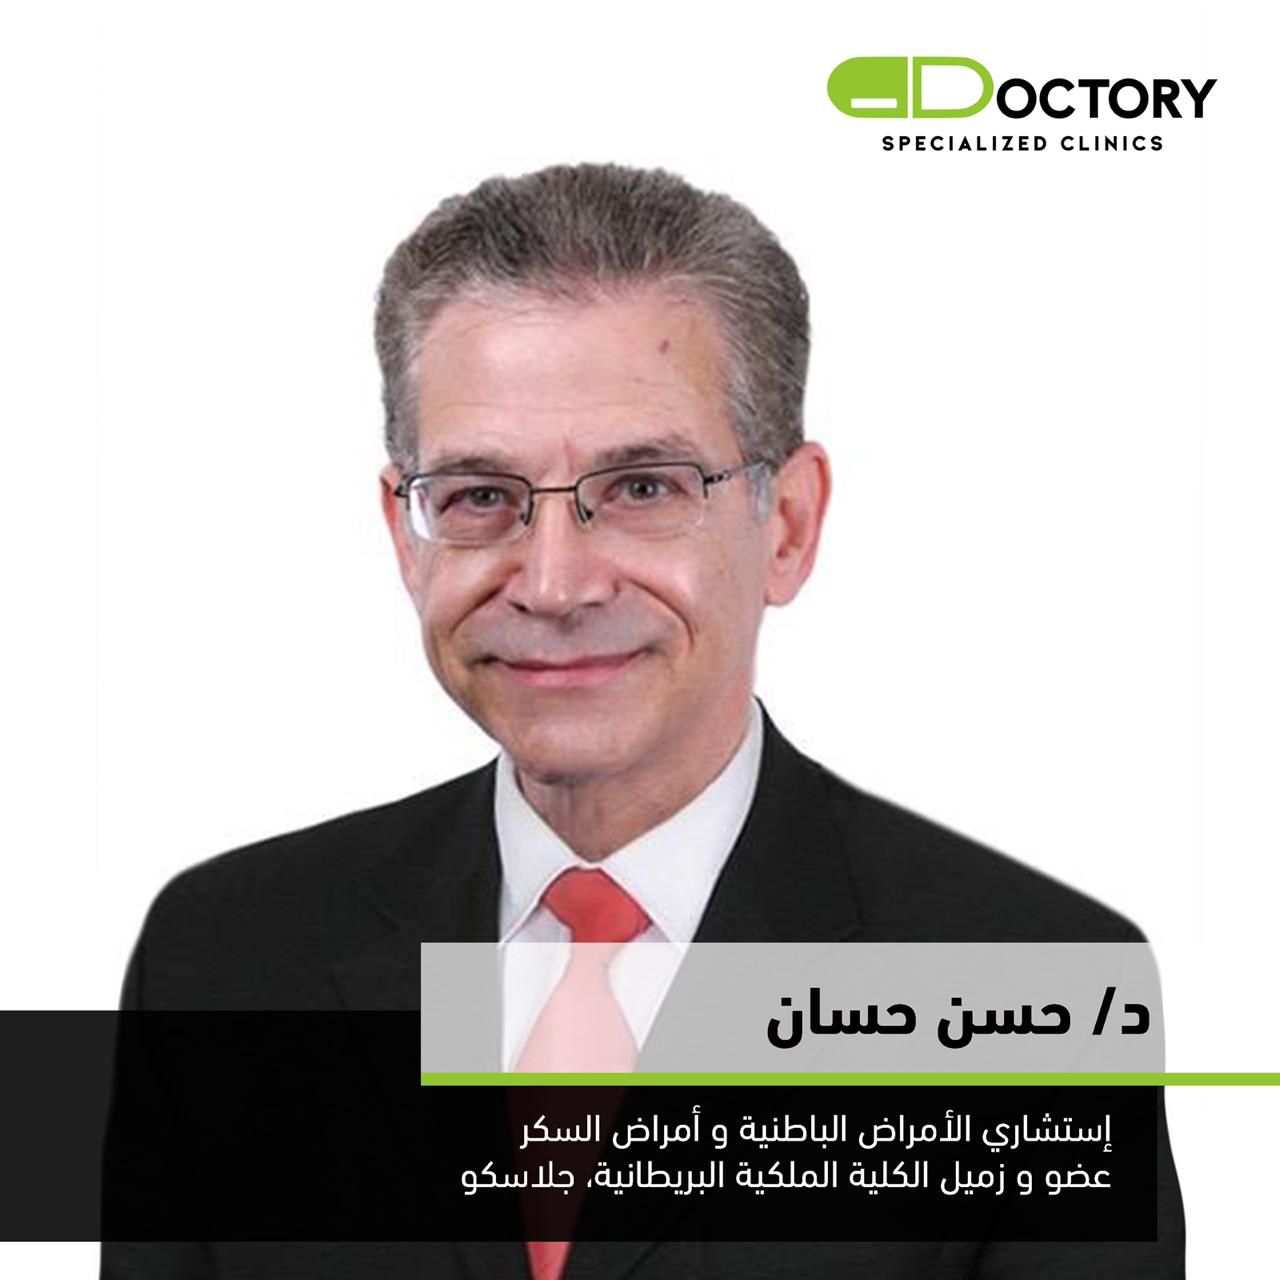 دكتور حسن حسان